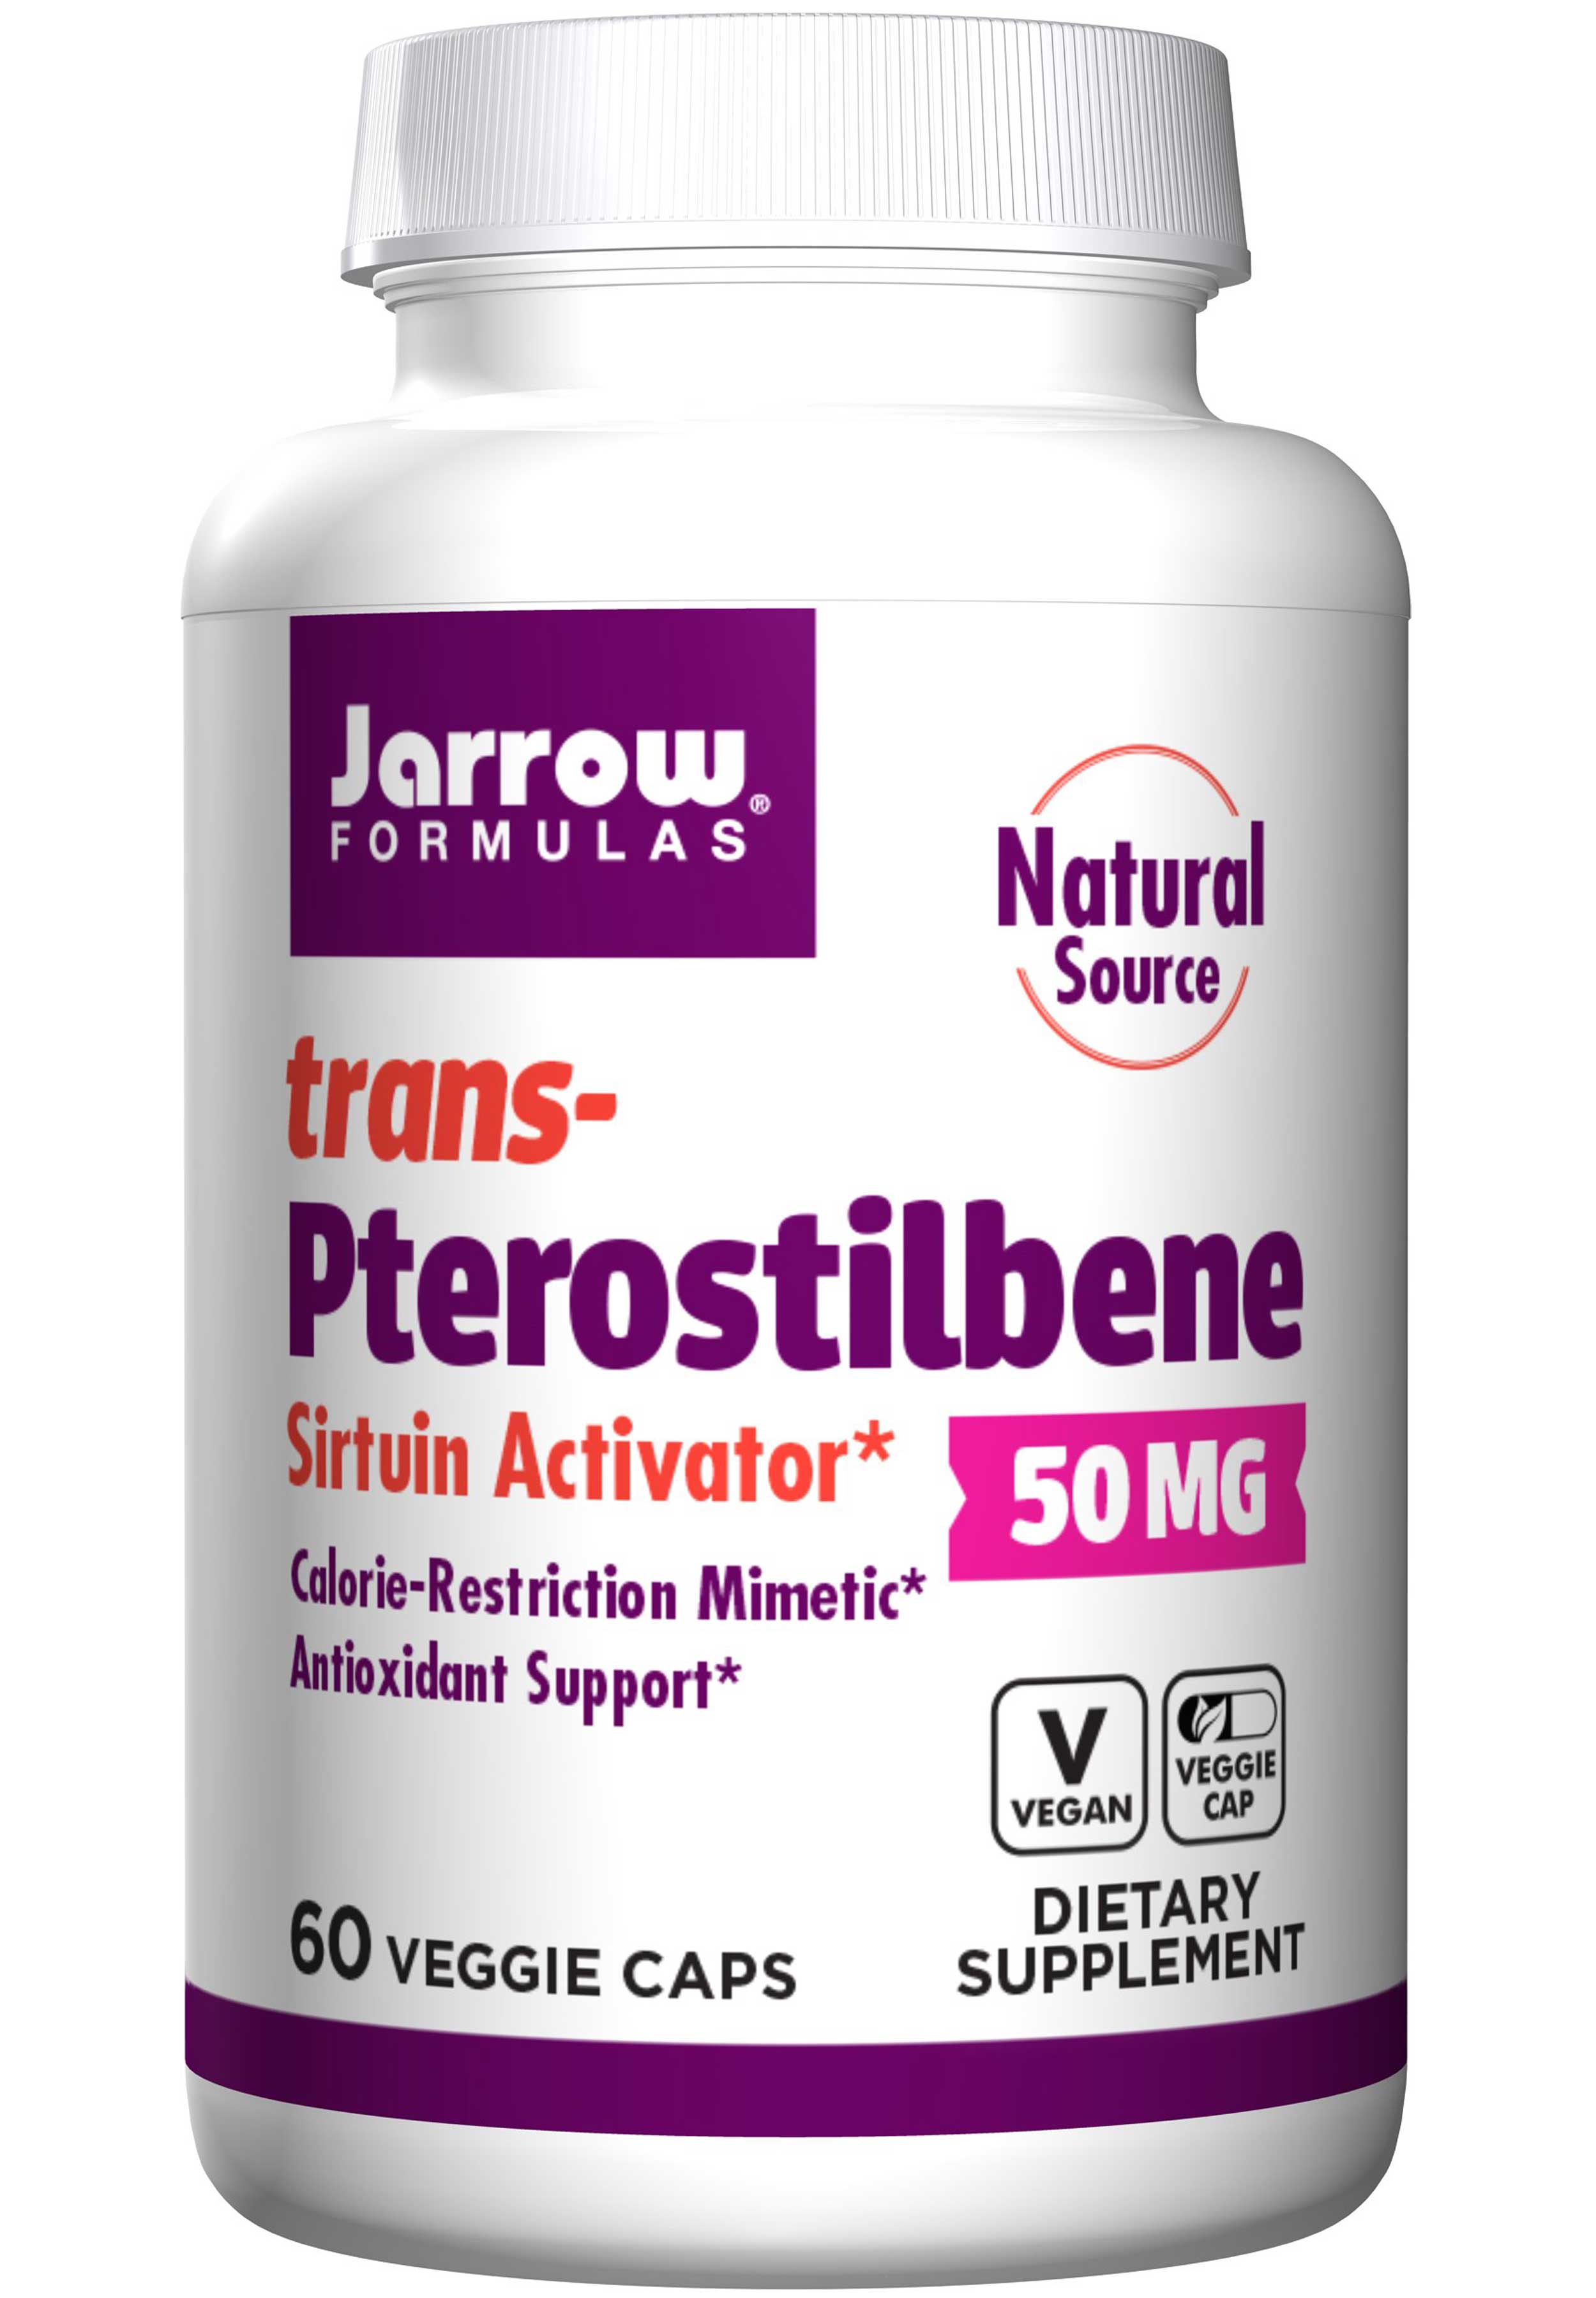 Jarrow Formulas trans-Pterostilbene 50 mg